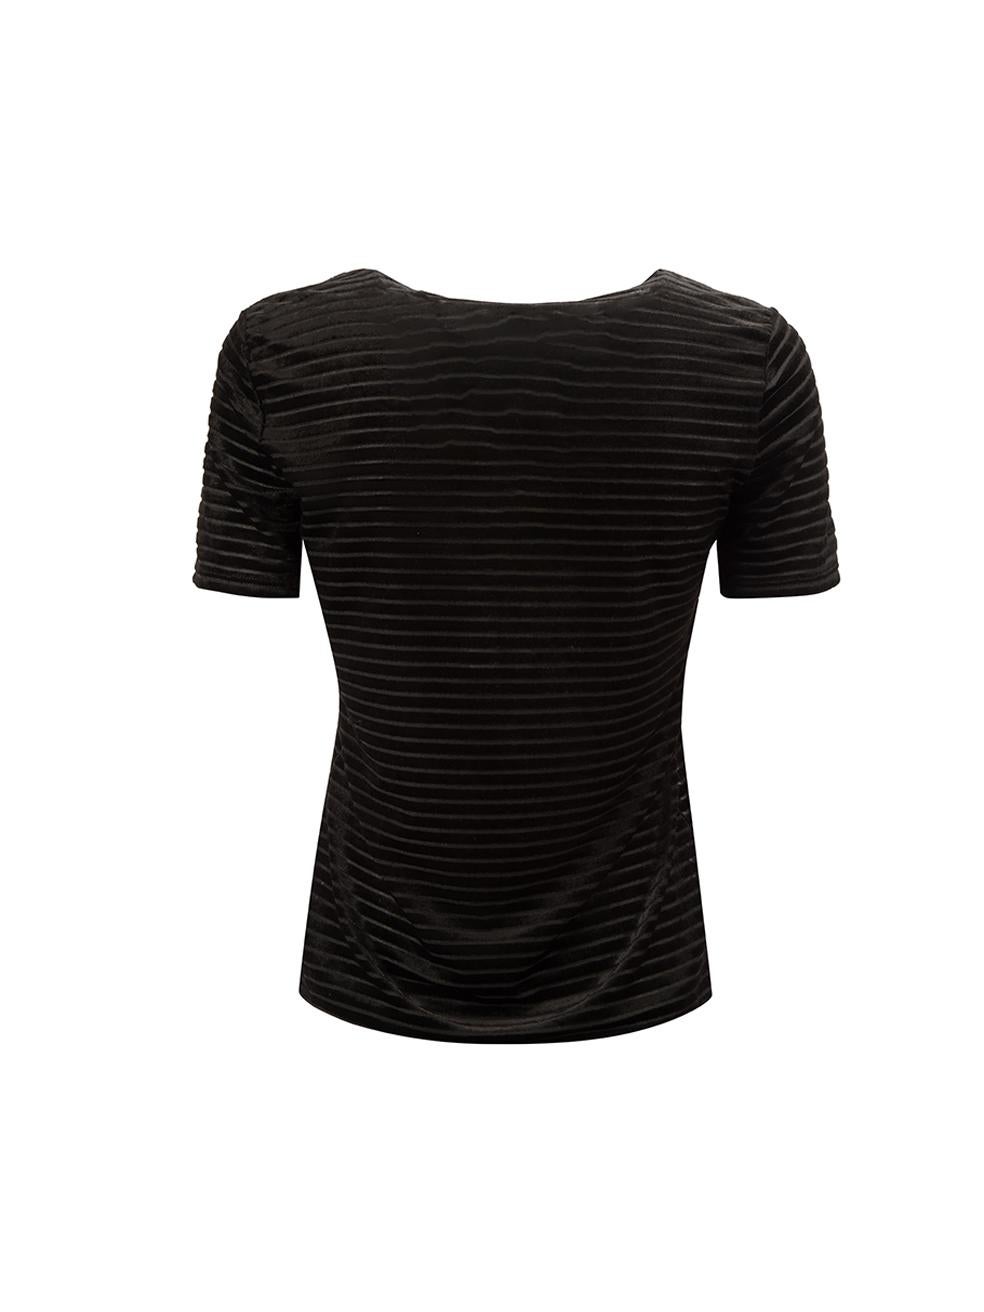 Emporio Armani Women's Armani Collezioni Black Velvet Striped T-Shirt In Good Condition In London, GB